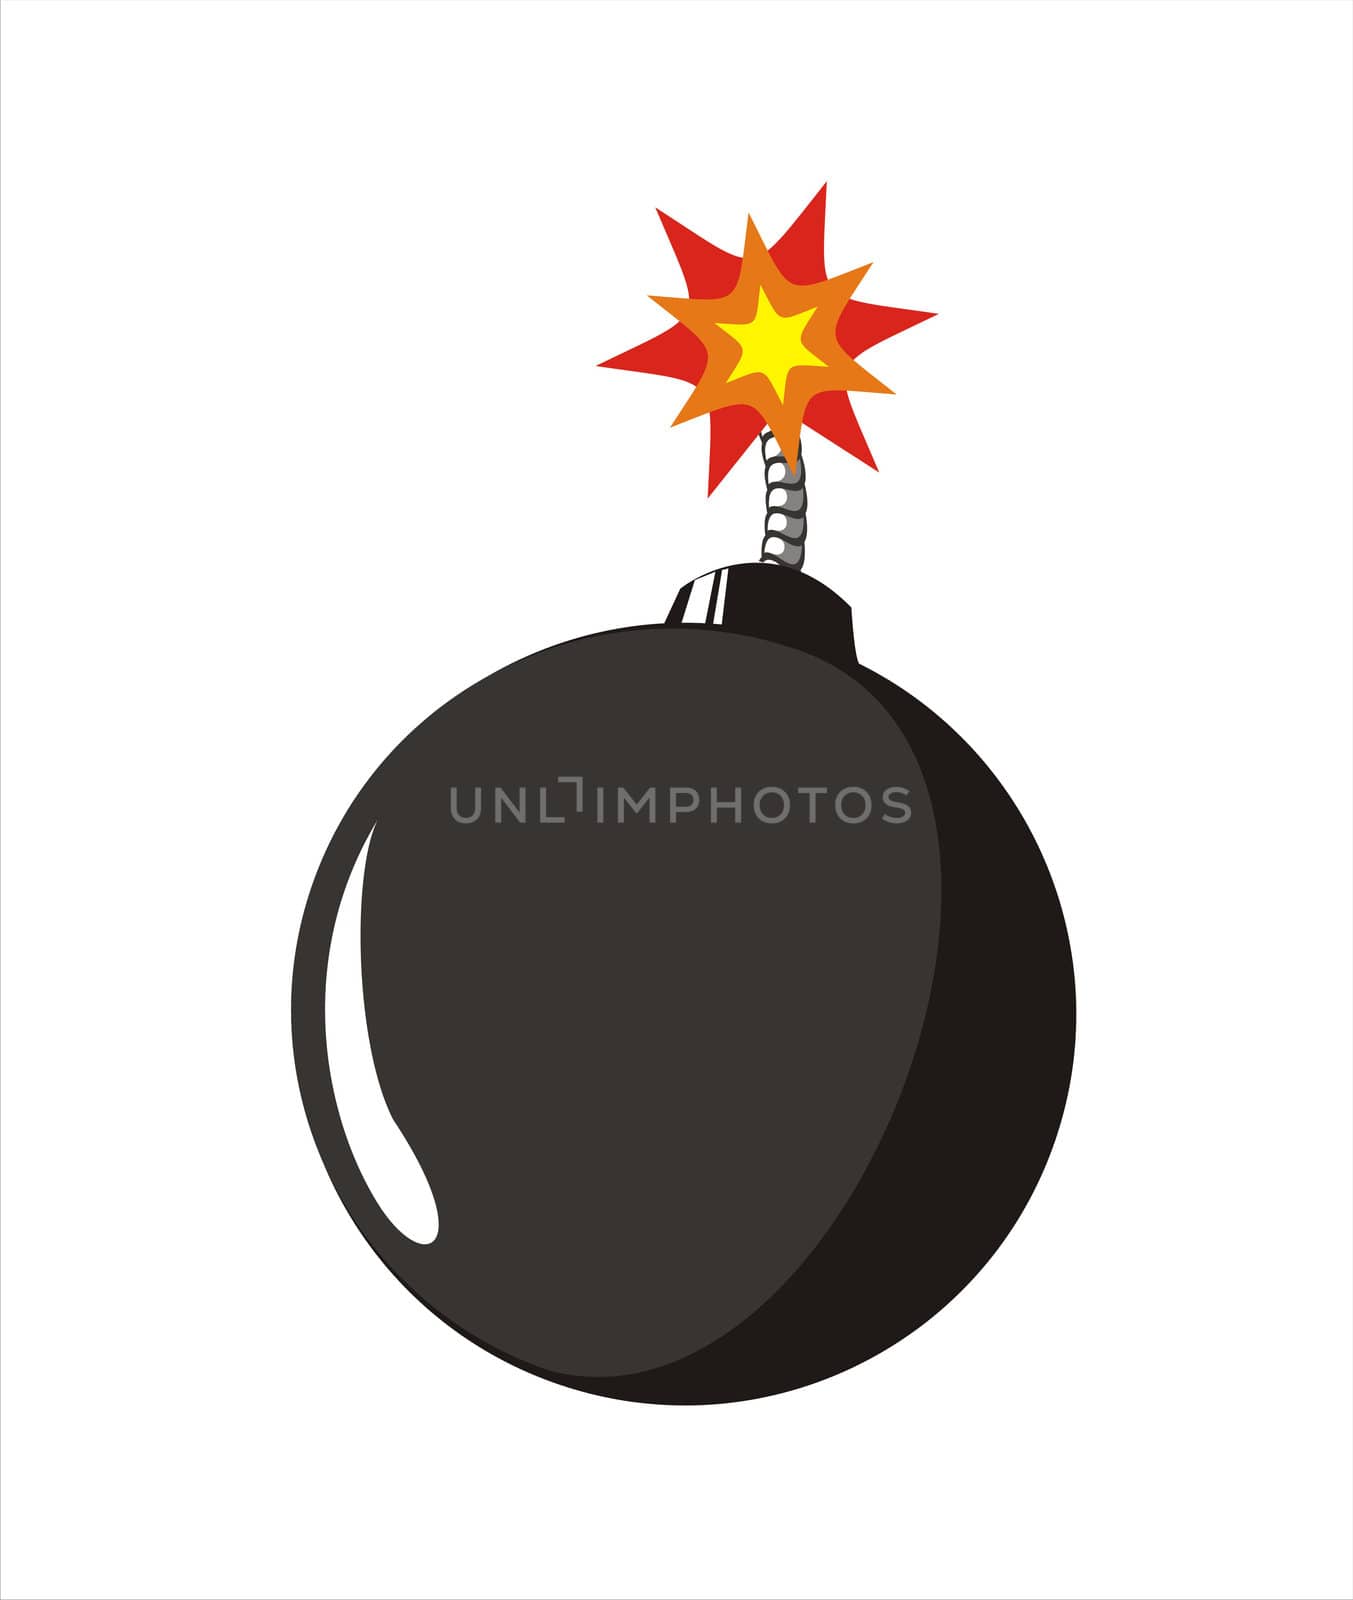 big size old style black bomb with burning fuse illustration